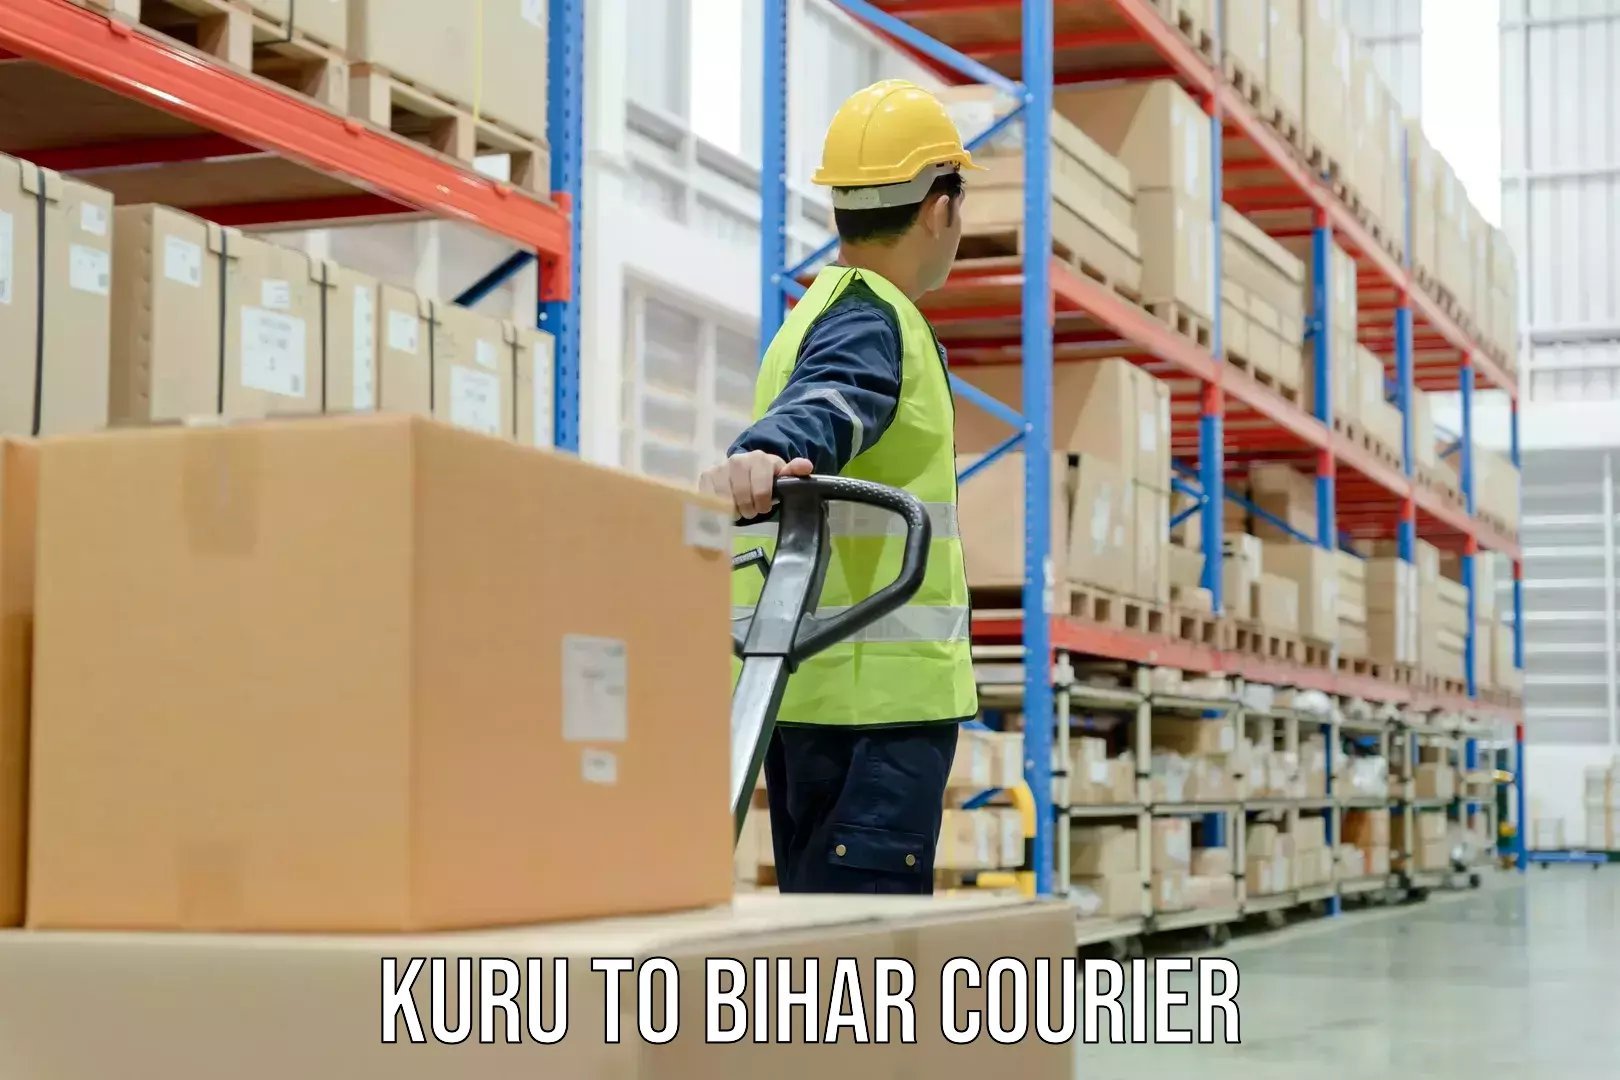 Doorstep delivery service Kuru to Bihar